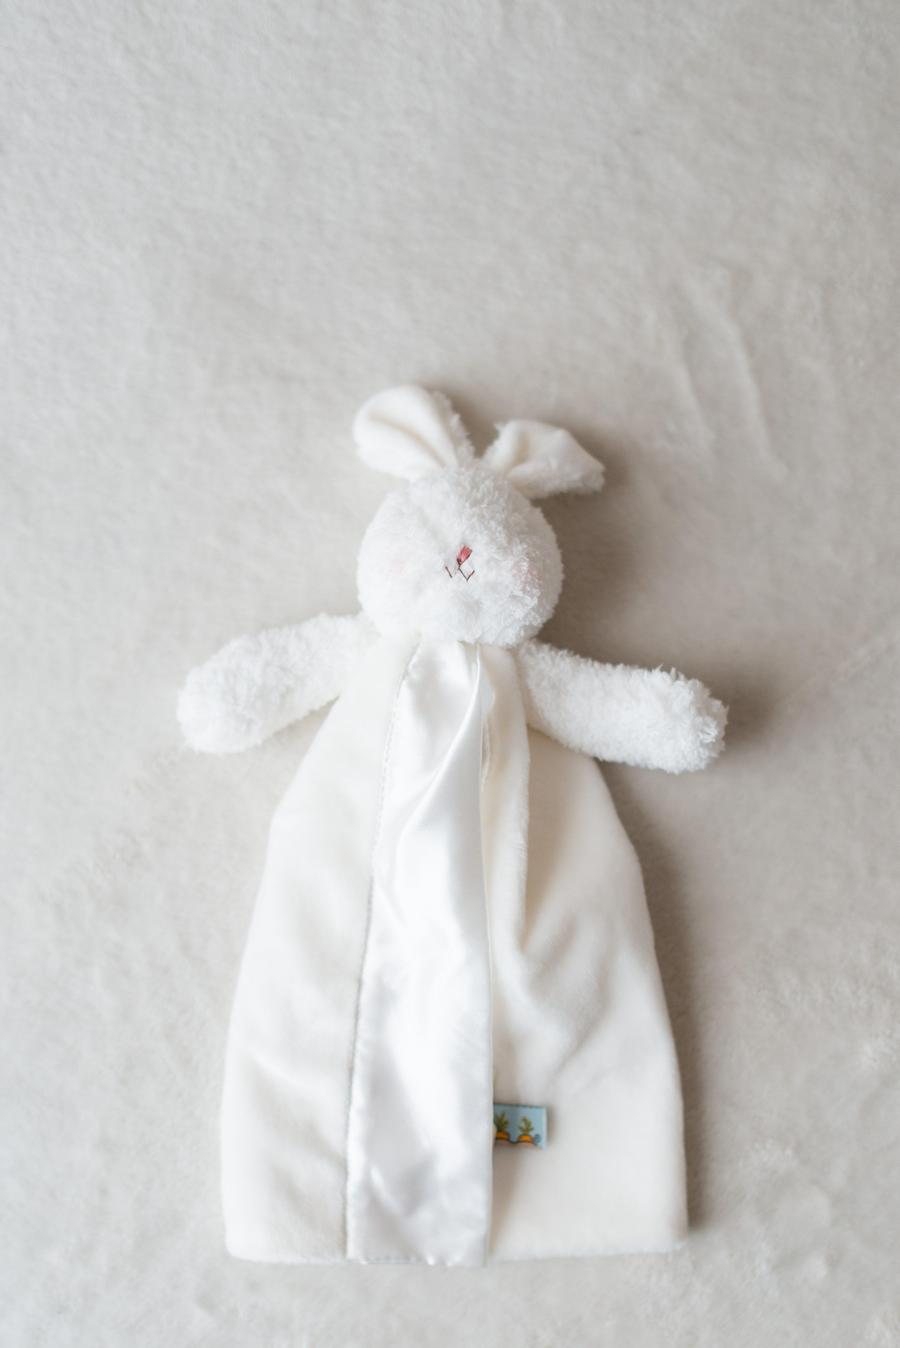 Bunnies by the Bay soft and cuddly cream bunny lovey blanket toy - Bun Bun Bye Bye Buddy